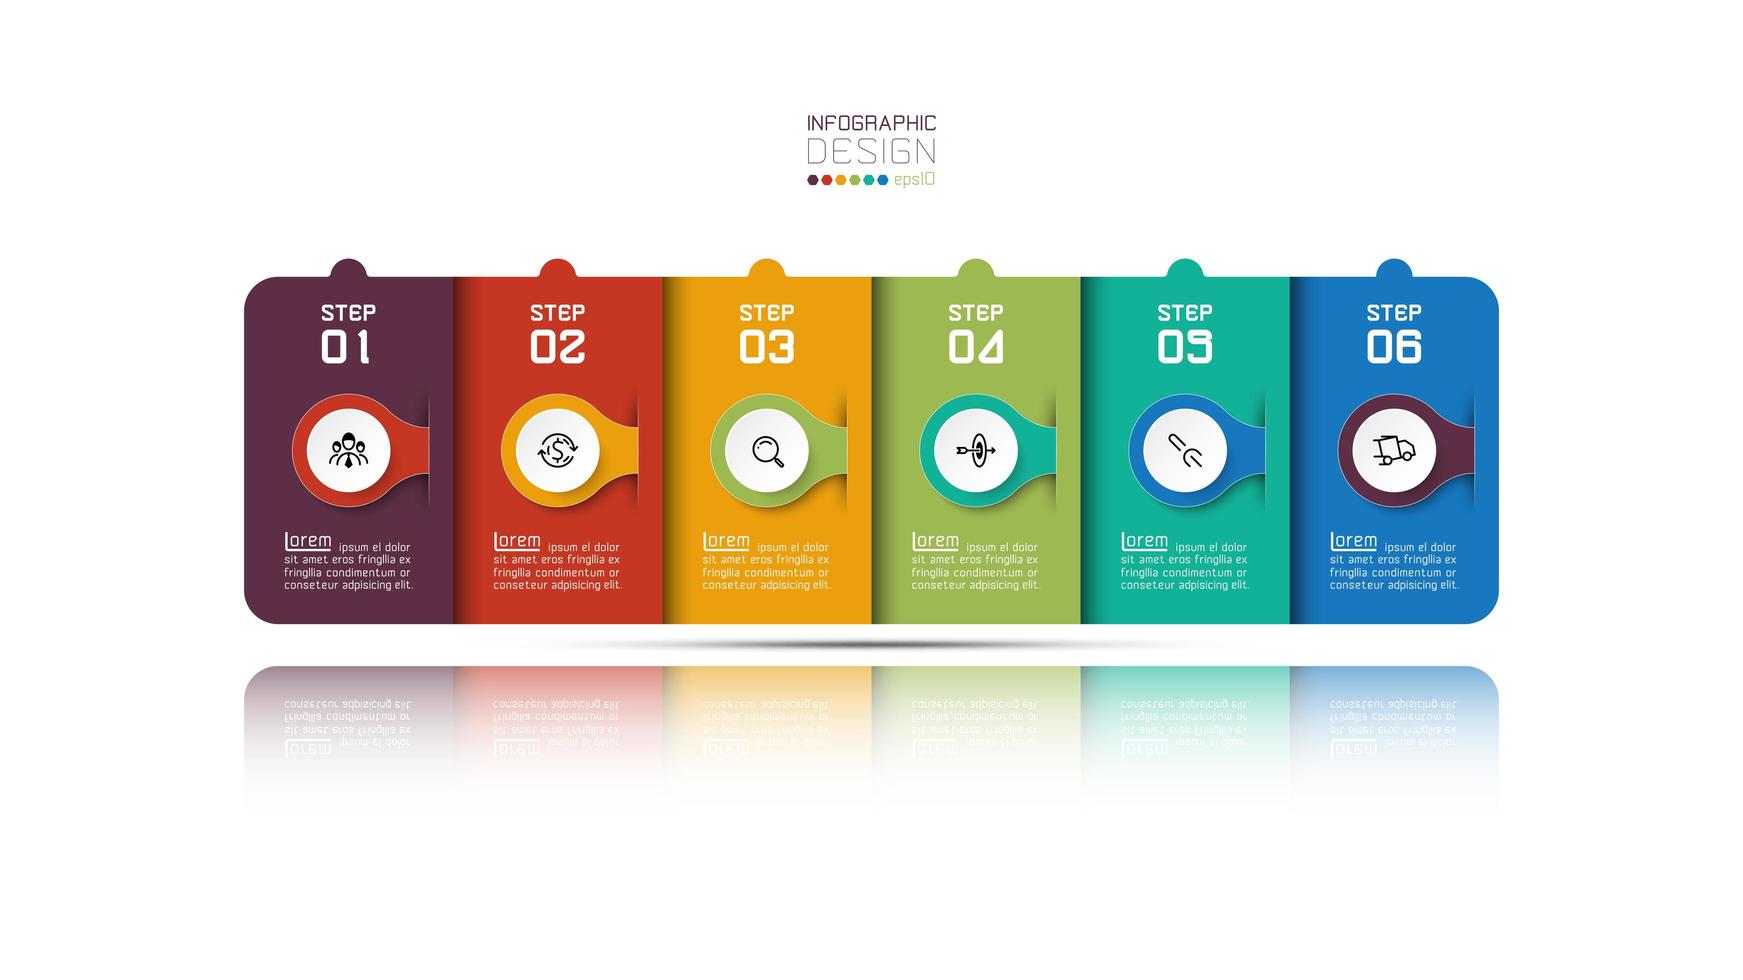 design de infográfico de negócios retangular moderno com seis etapas vetor